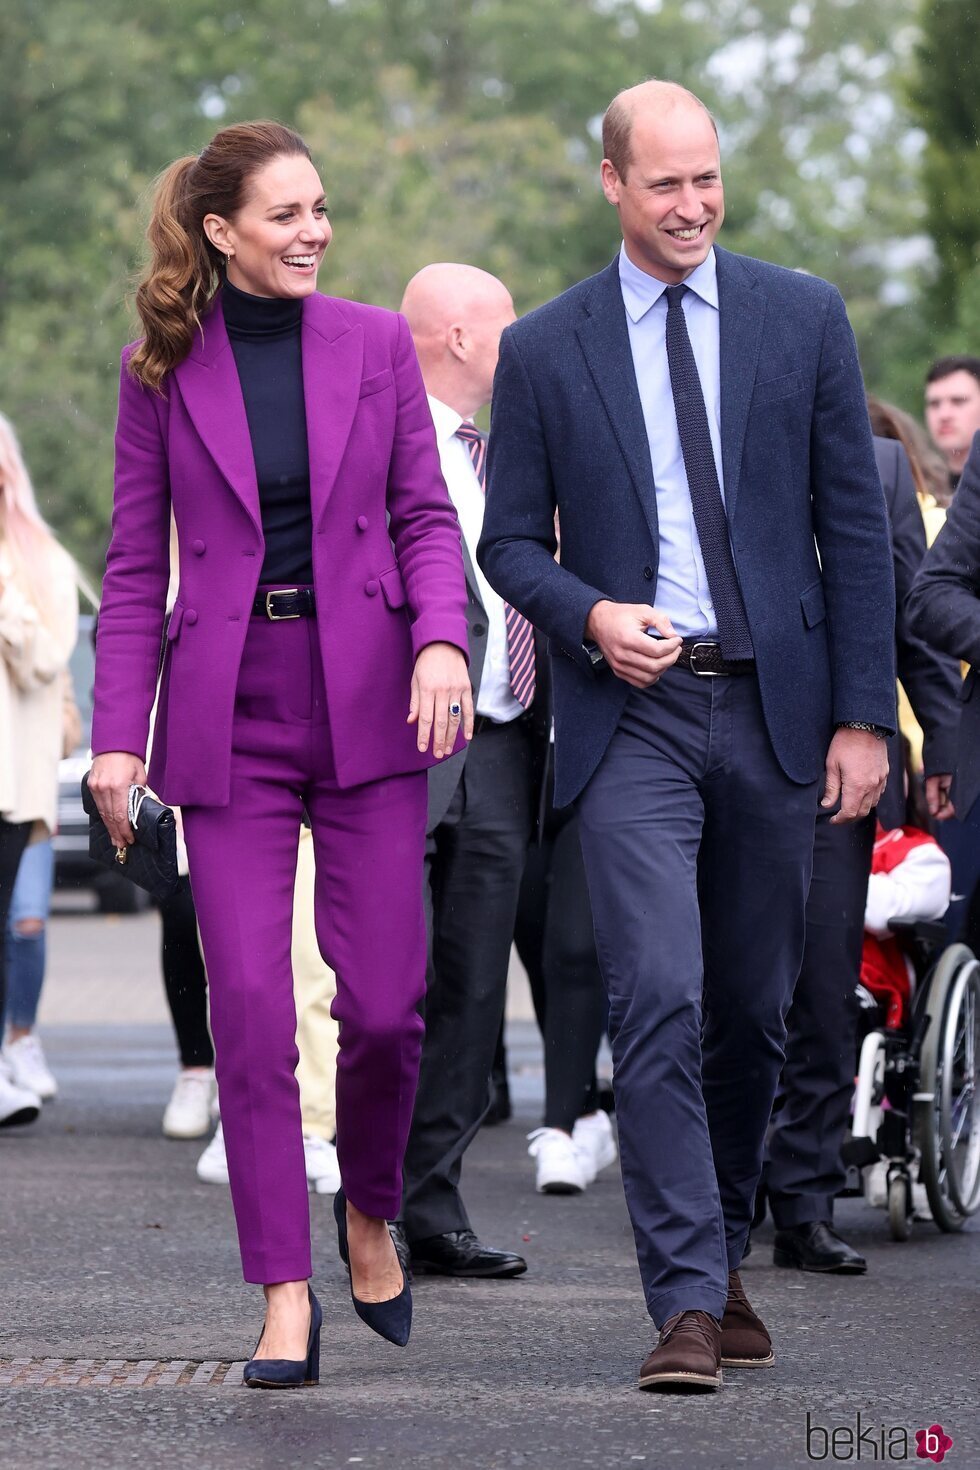 El Príncipe Guillermo y Kate Middleton en la Ulster University en Irlanda del Norte